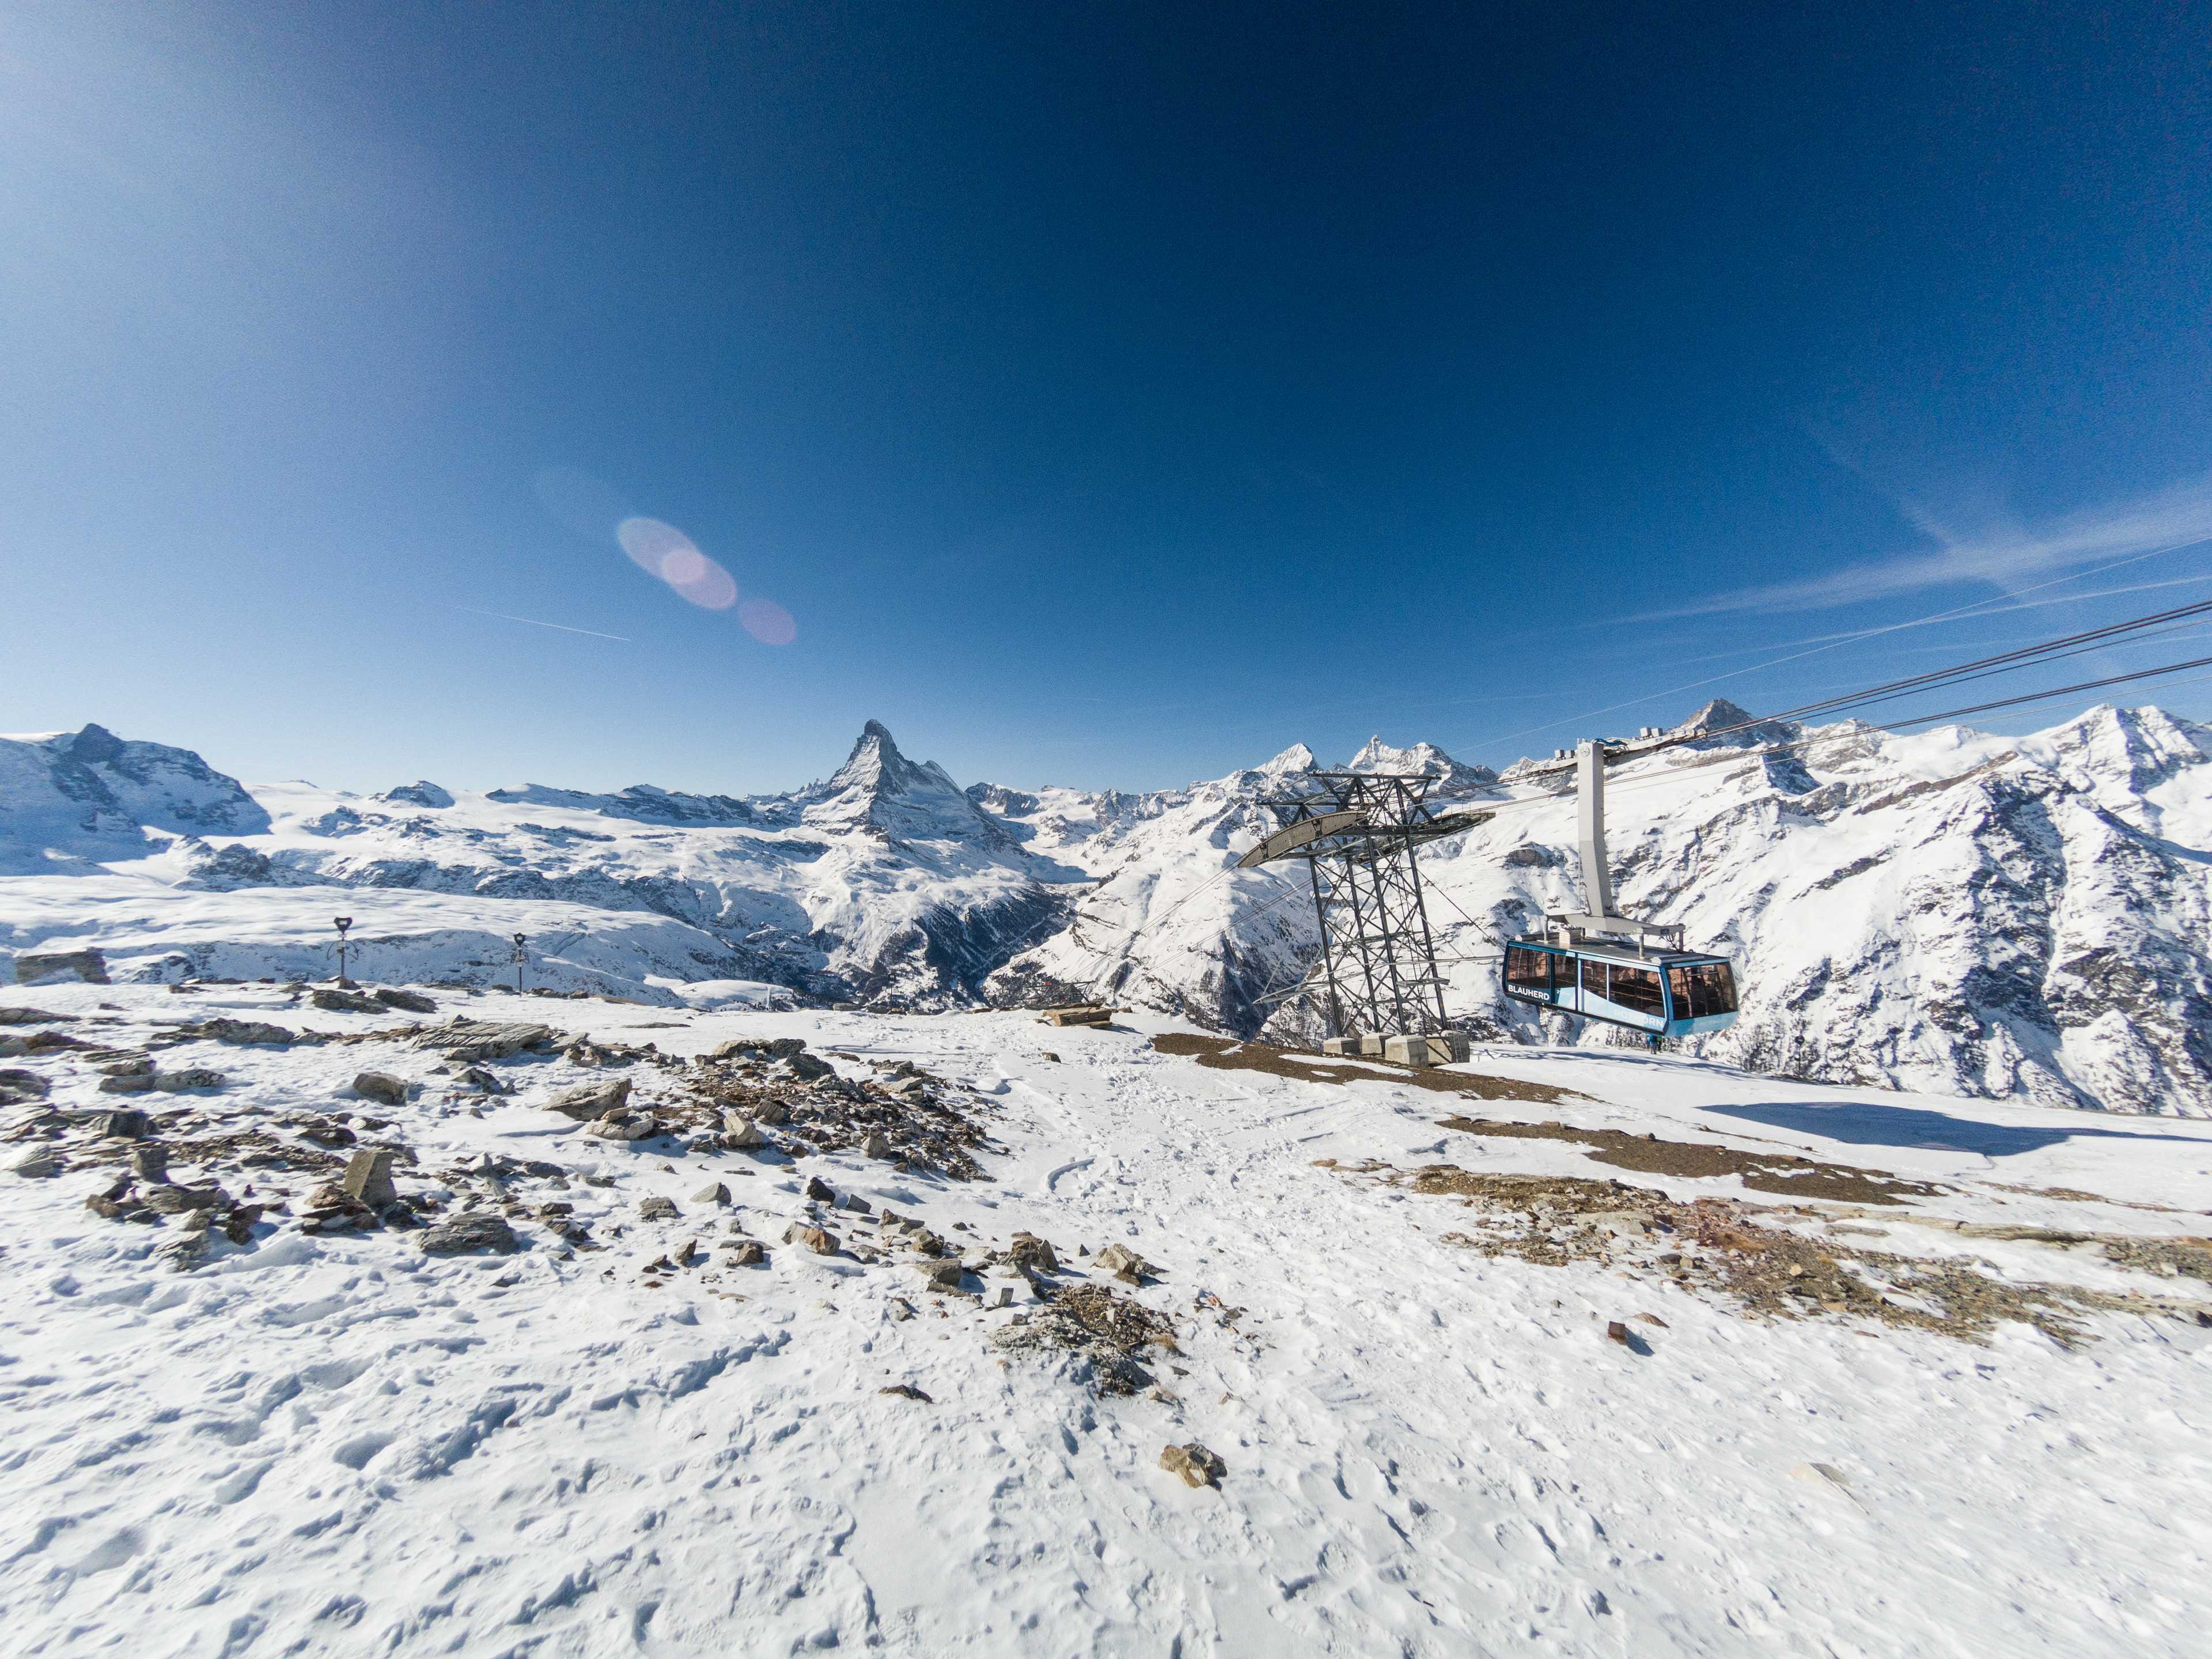 Blauherd-Rothorn aerial tramway, Zermatt